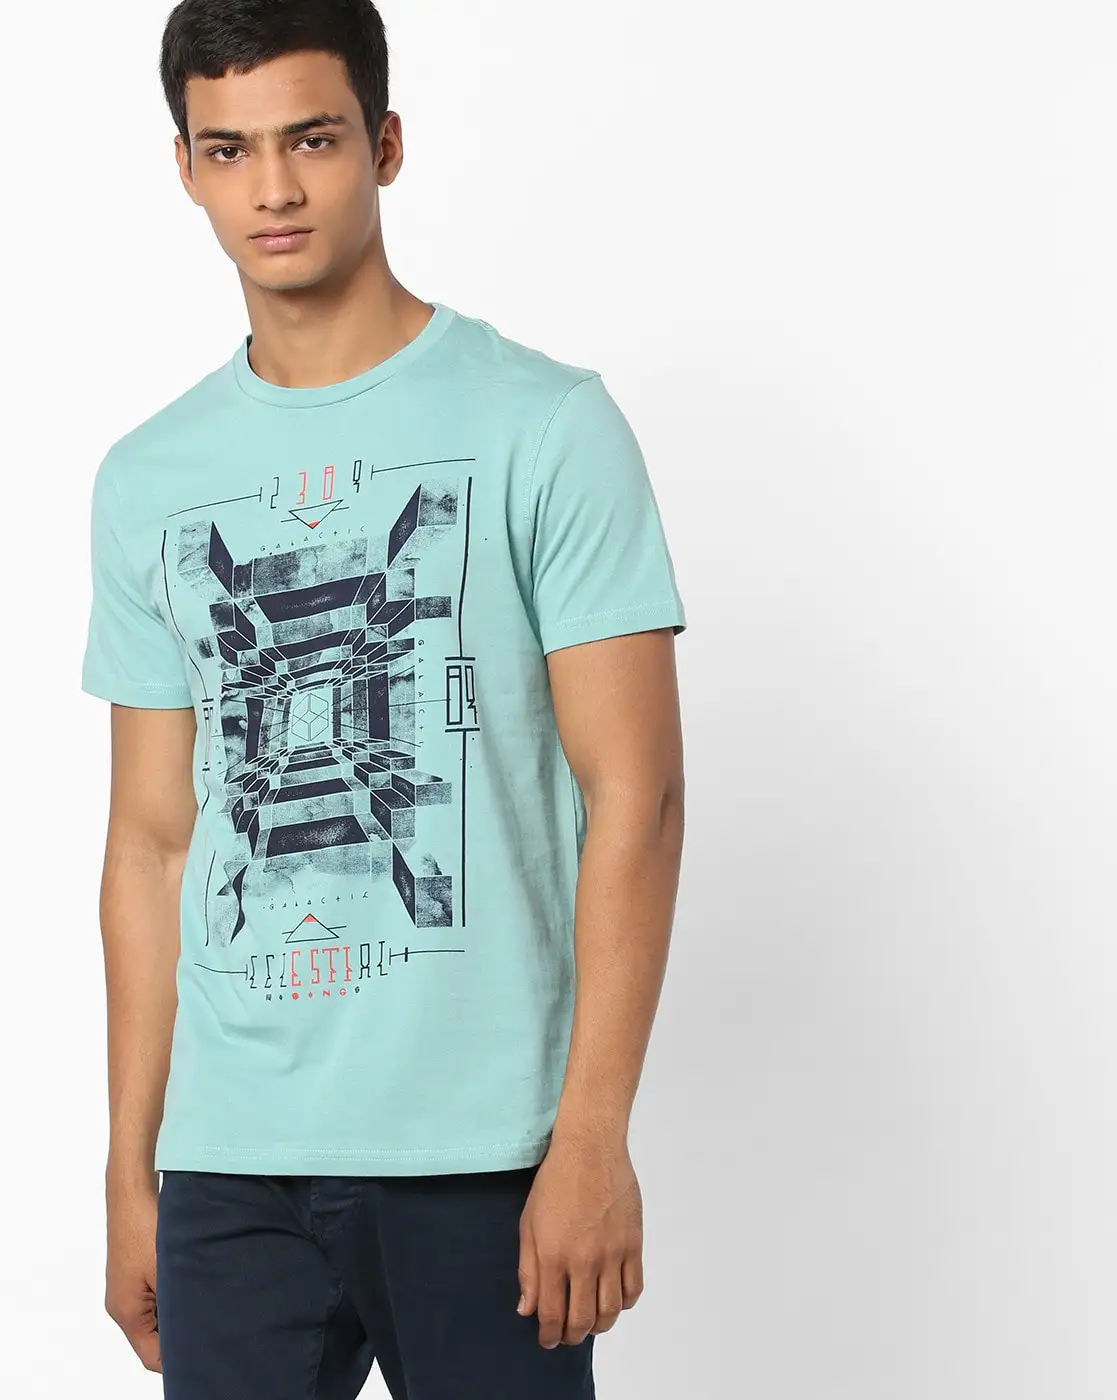 Erstklassige Qualität 100 % Baumwolle/Bambusfaser Herren-T-Shirt atmungsaktiv individuelles Logo bedrucktes individuelles T-Shirt